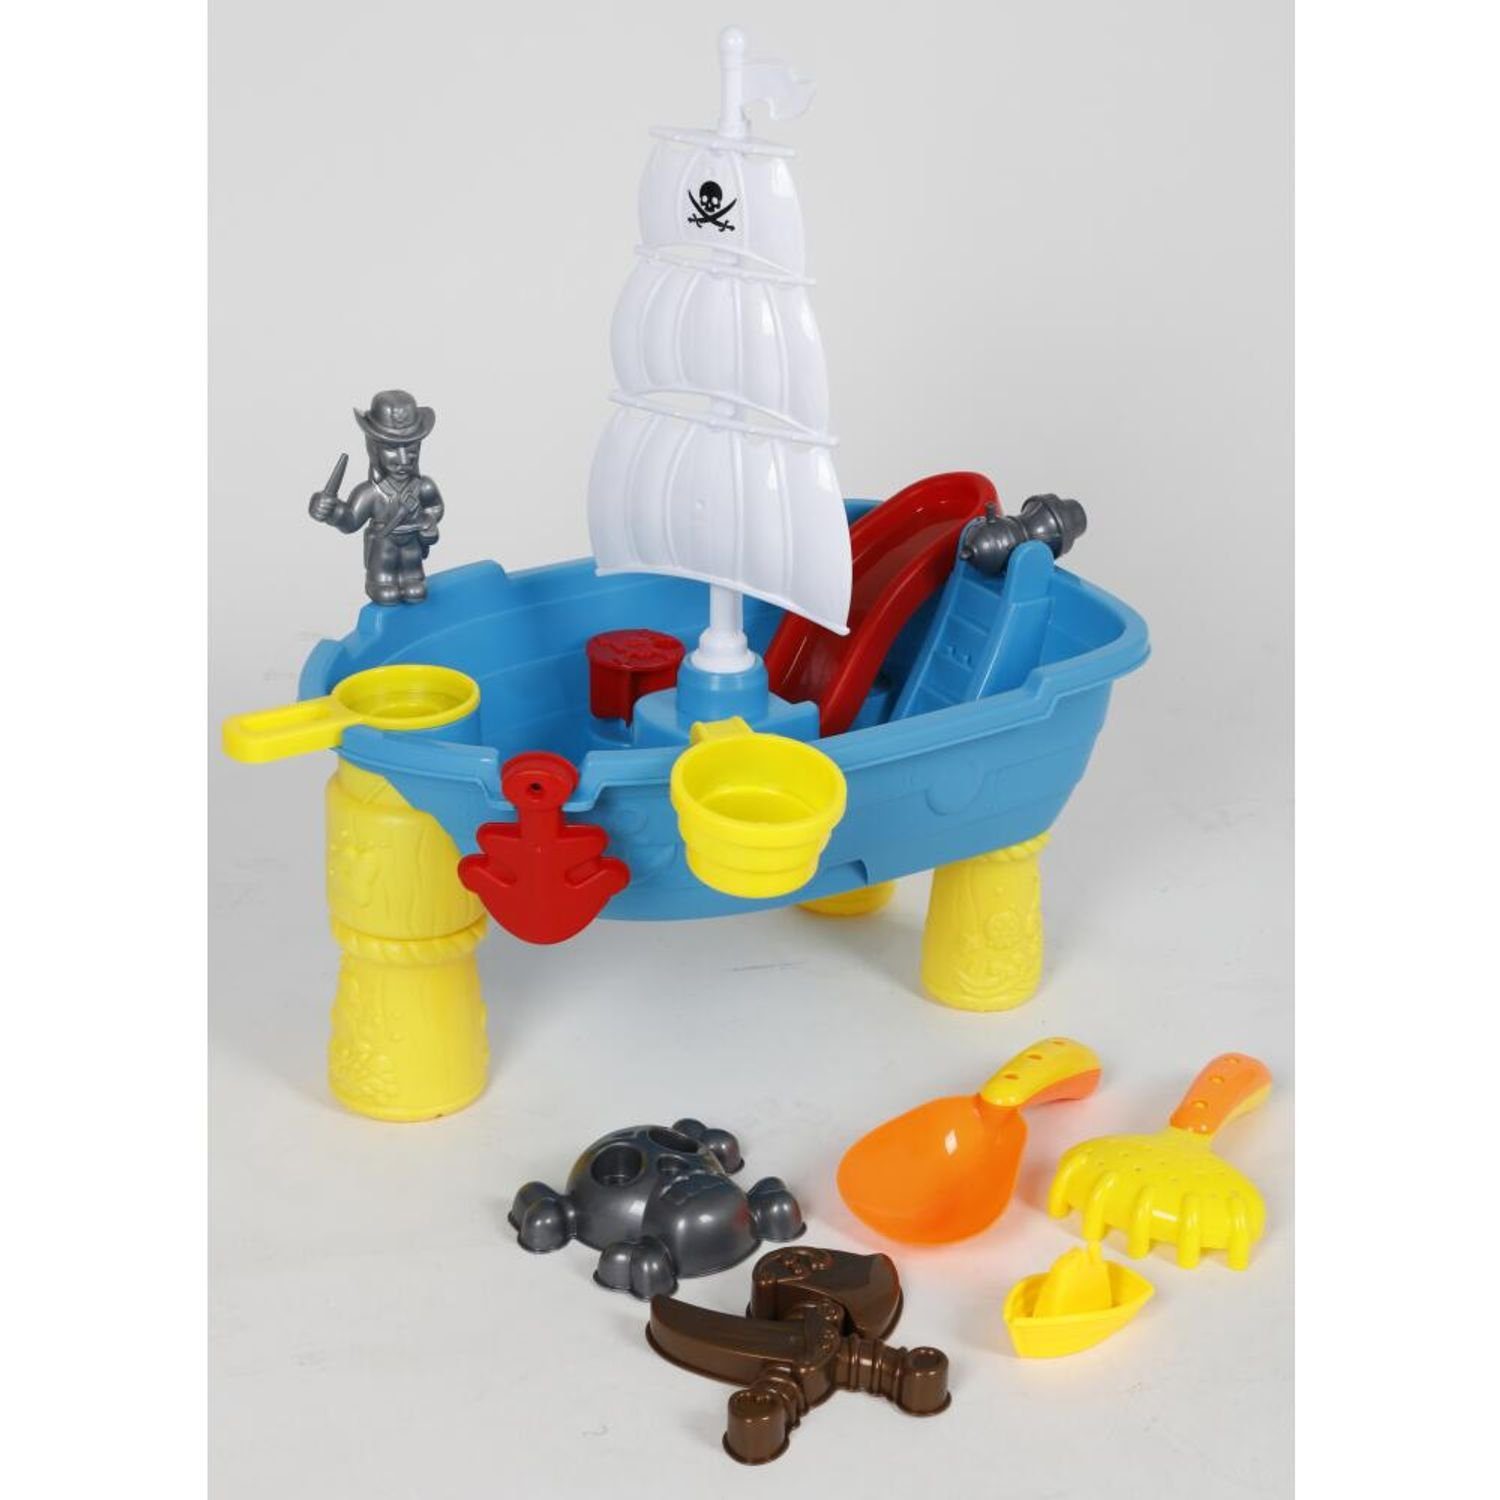 EDCO Gartentisch Spieltisch Kinder Harke Sandkasten Spielzeug Förmchen Wasser Schaufel